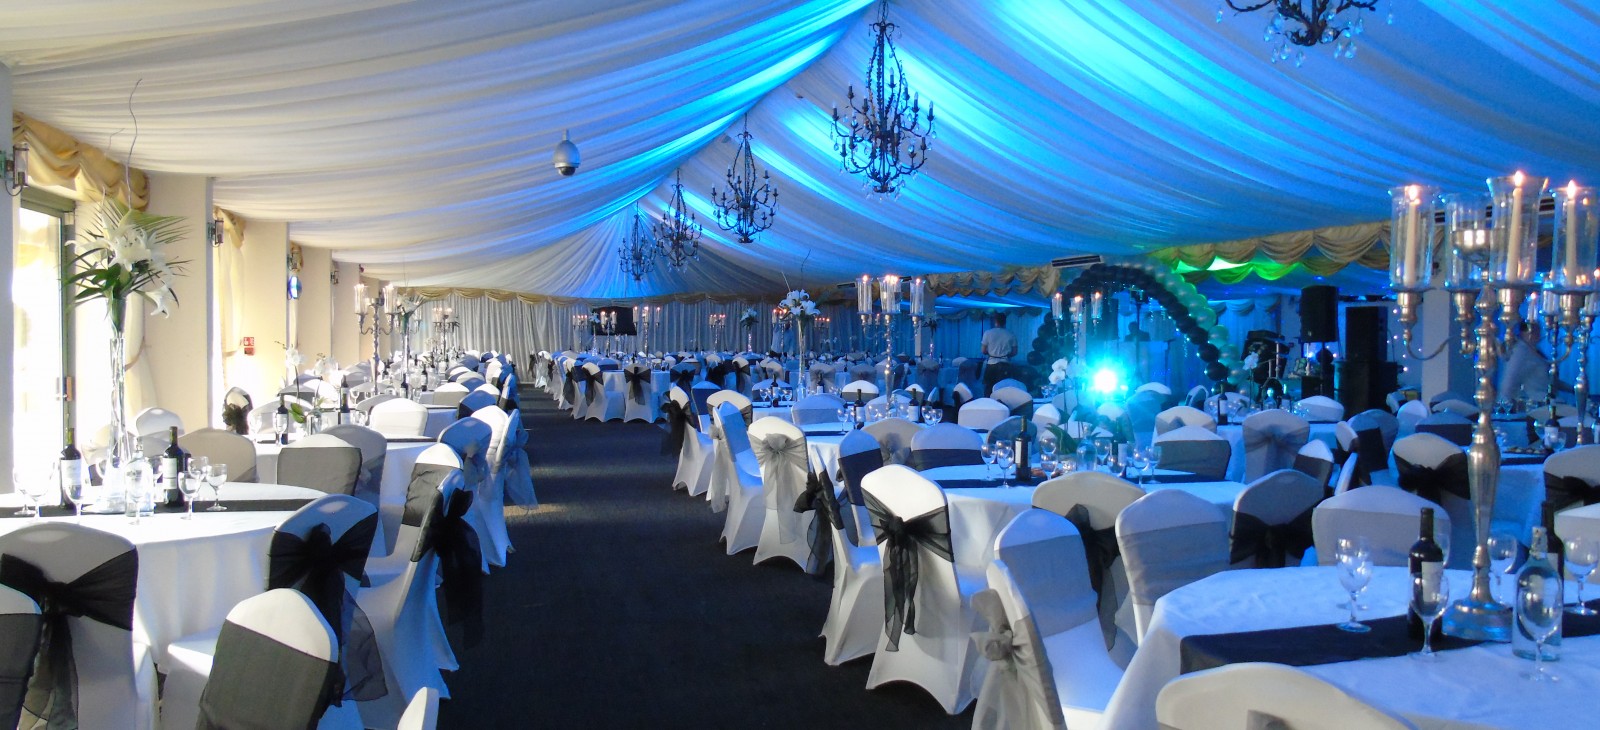 Corporate, wedding & function venue